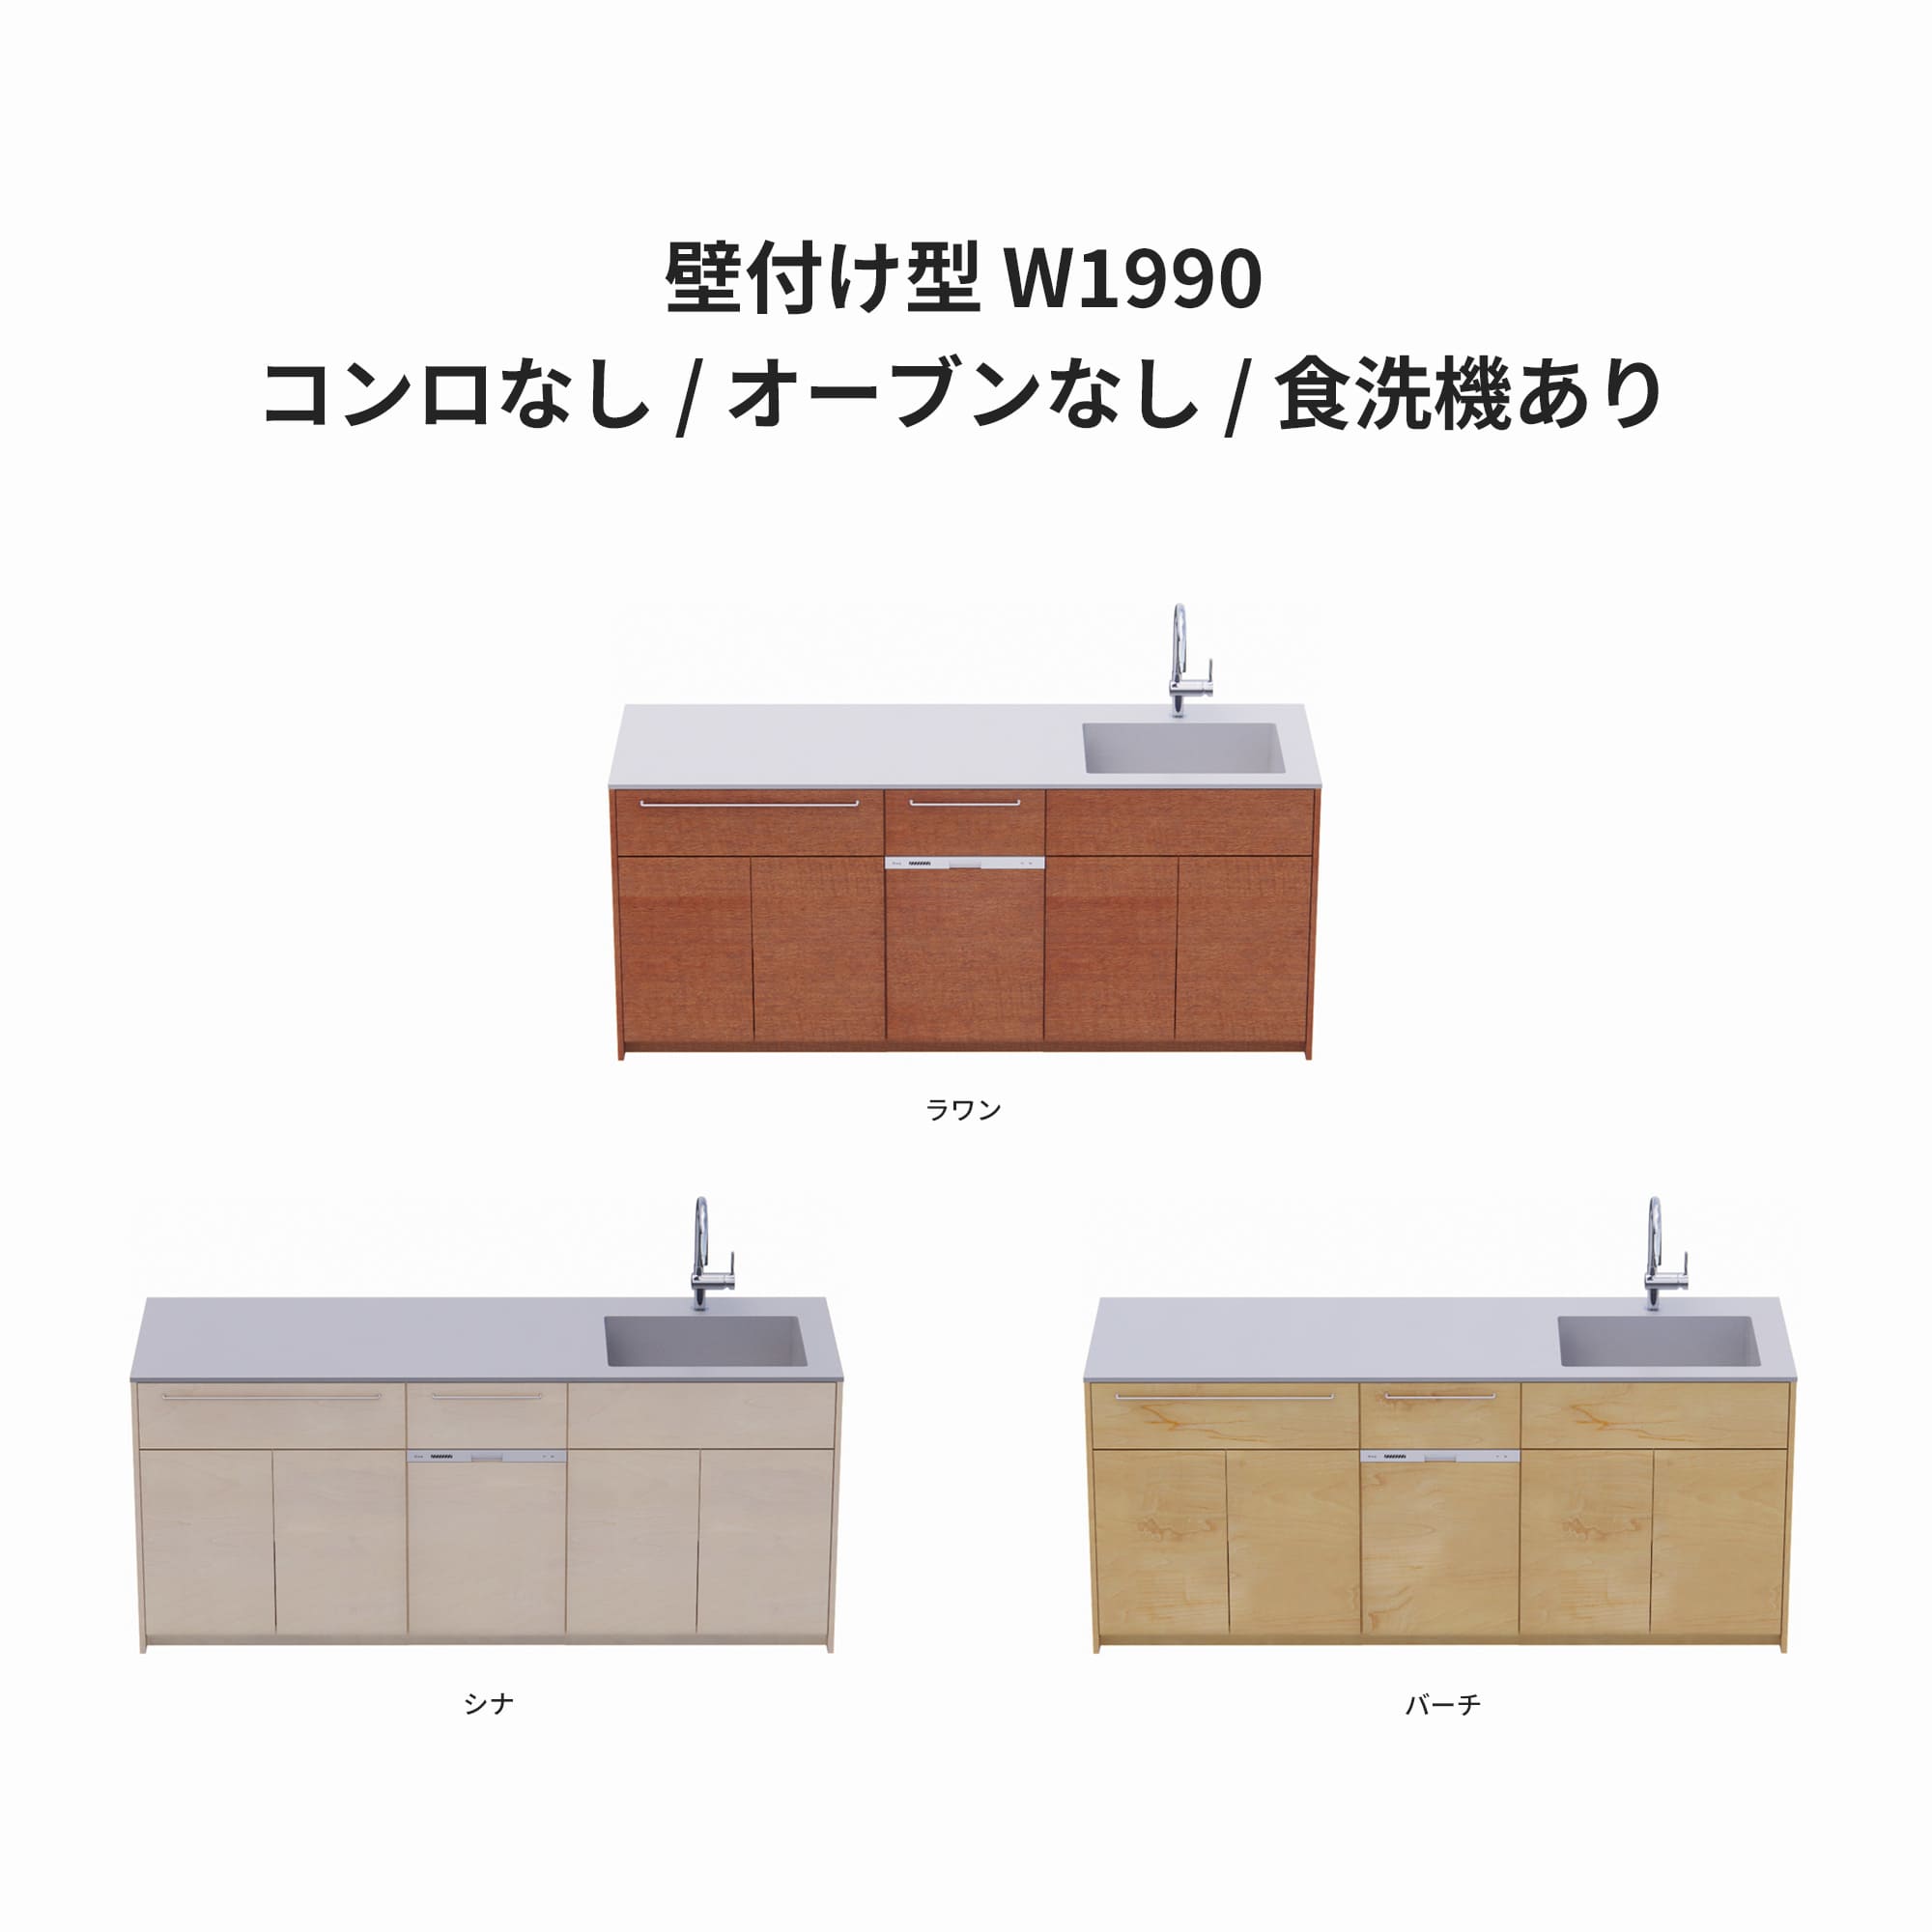 木製システムキッチン 壁付け型 W1990・コンロなし / オーブンなし / 食洗機あり KB-KC022-16-G183 ラワン・シナ・バーチが選択できます